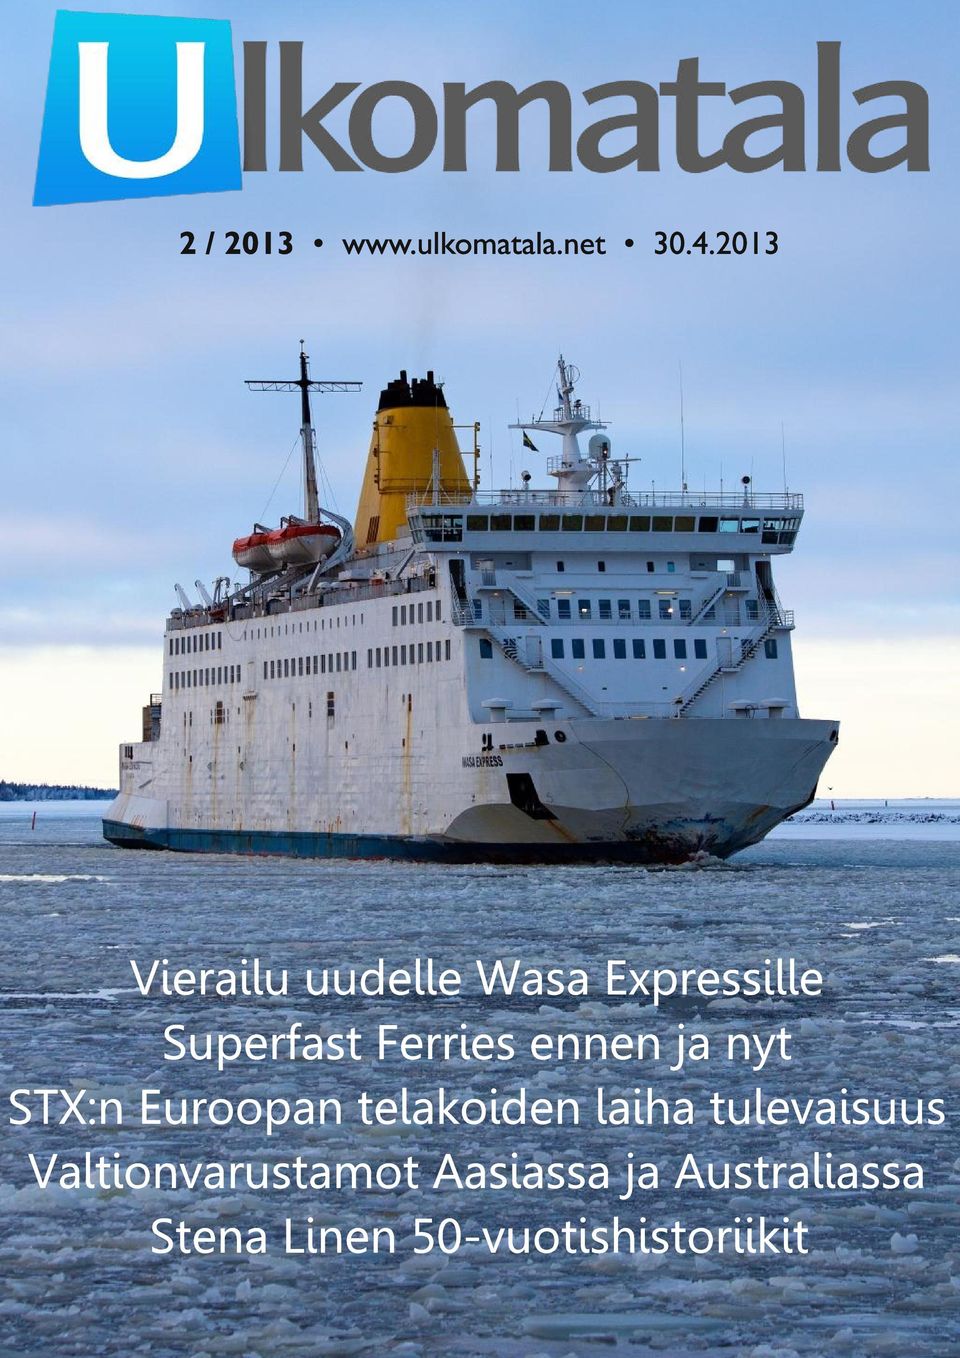 Ferries ennen ja nyt STX:n Euroopan telakoiden laiha